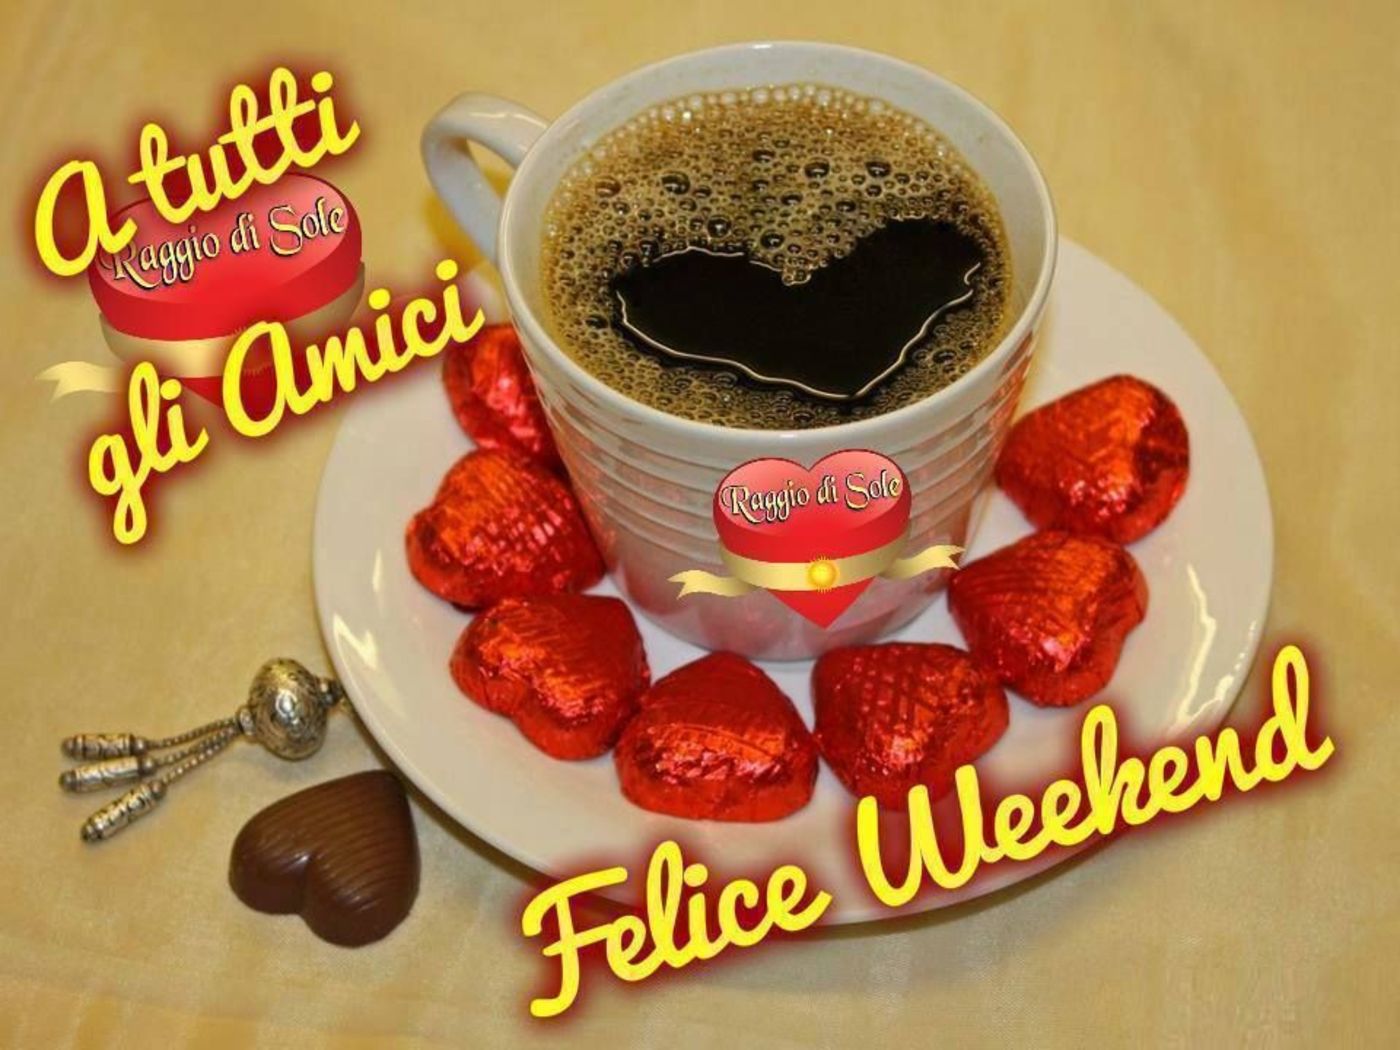 Felice Weekend caffè